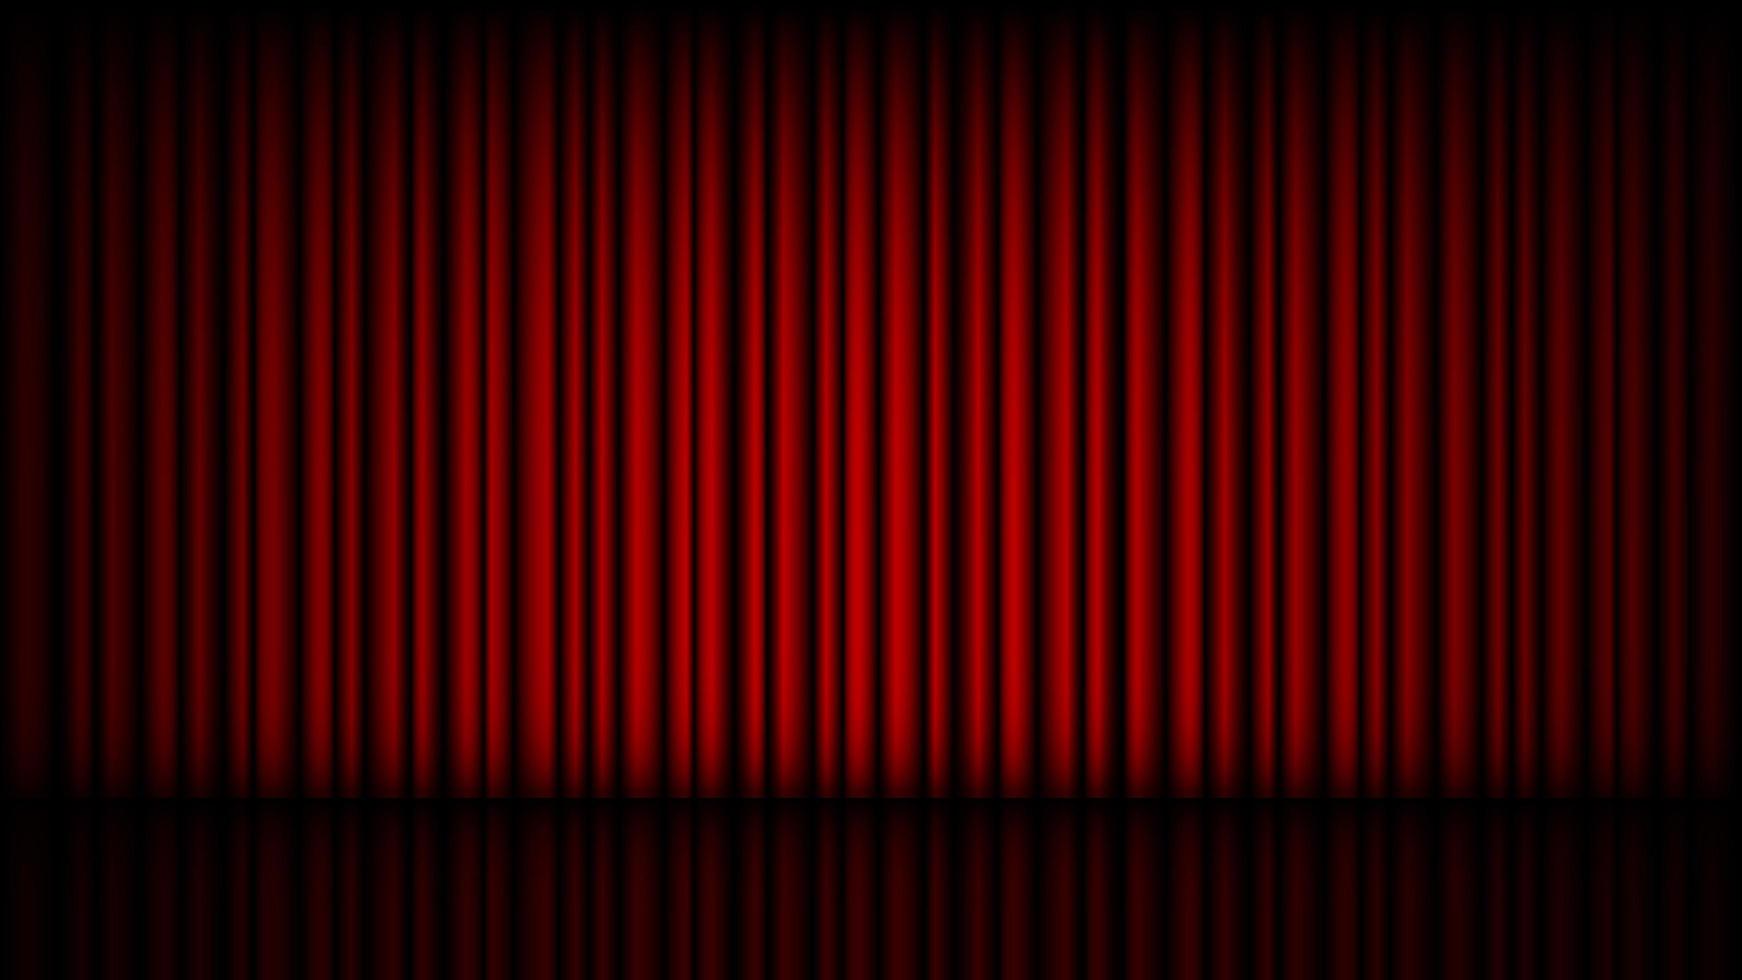 palco vazio com cortina de teatro vermelha fechada vetor